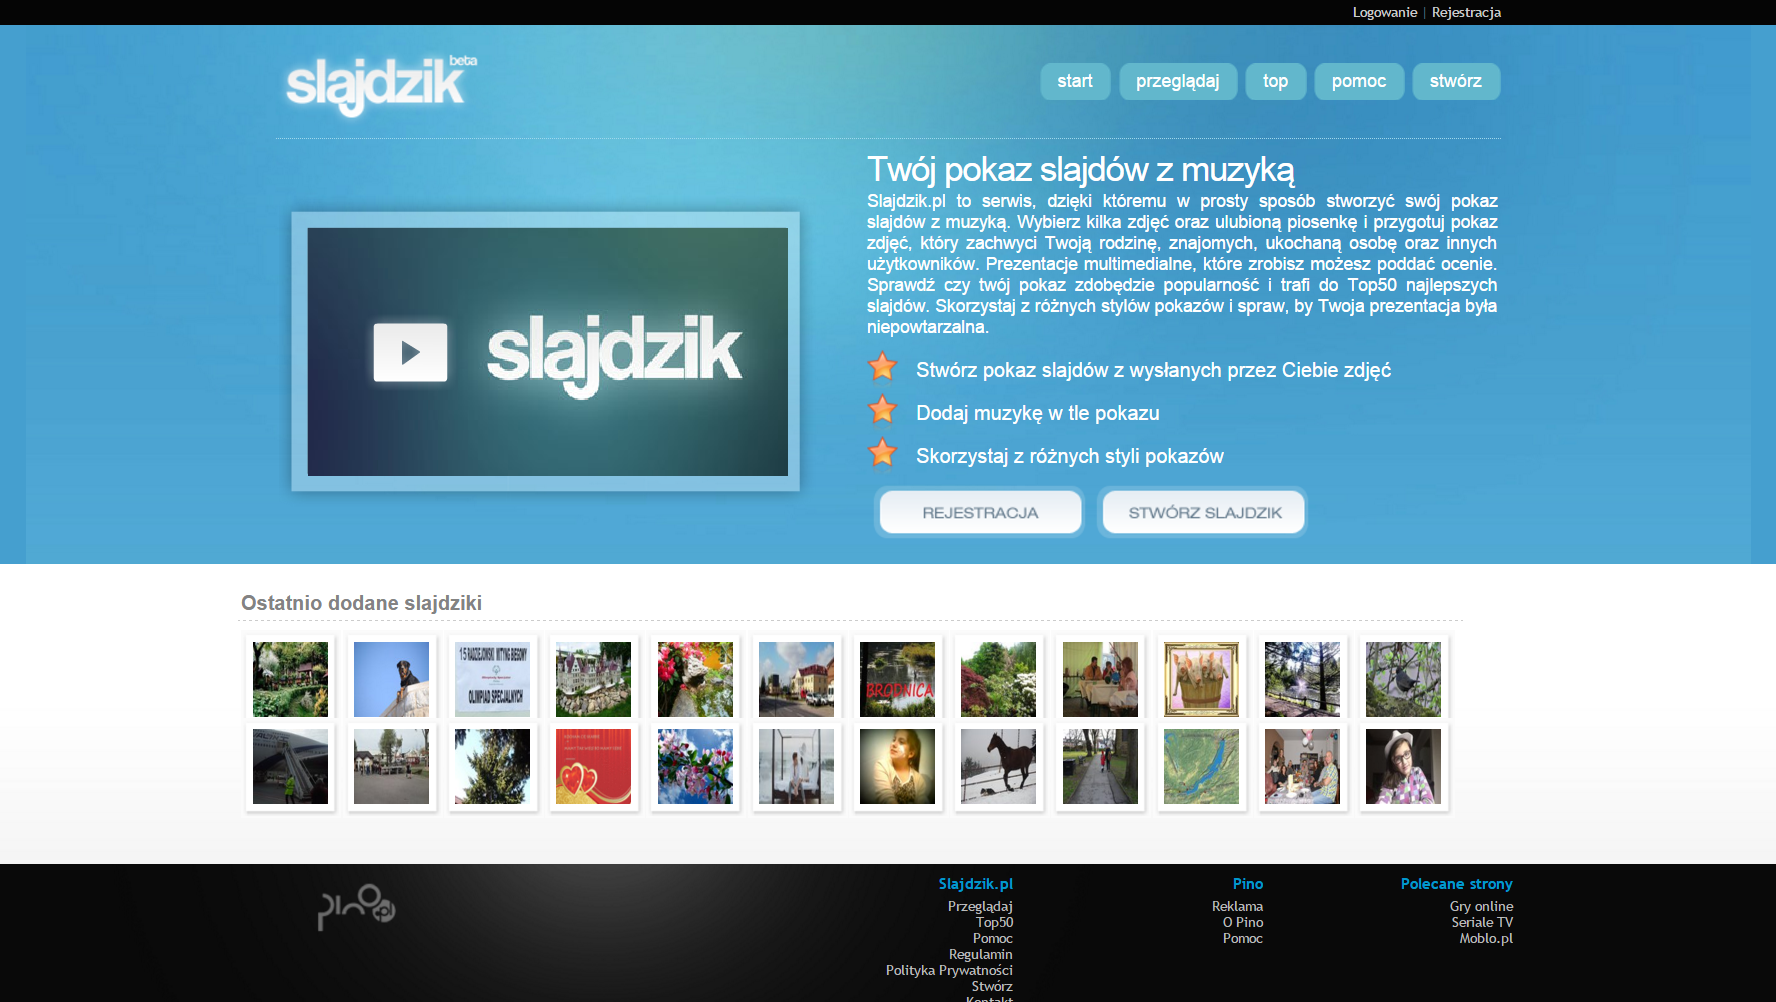 Project Slajdzik.pl